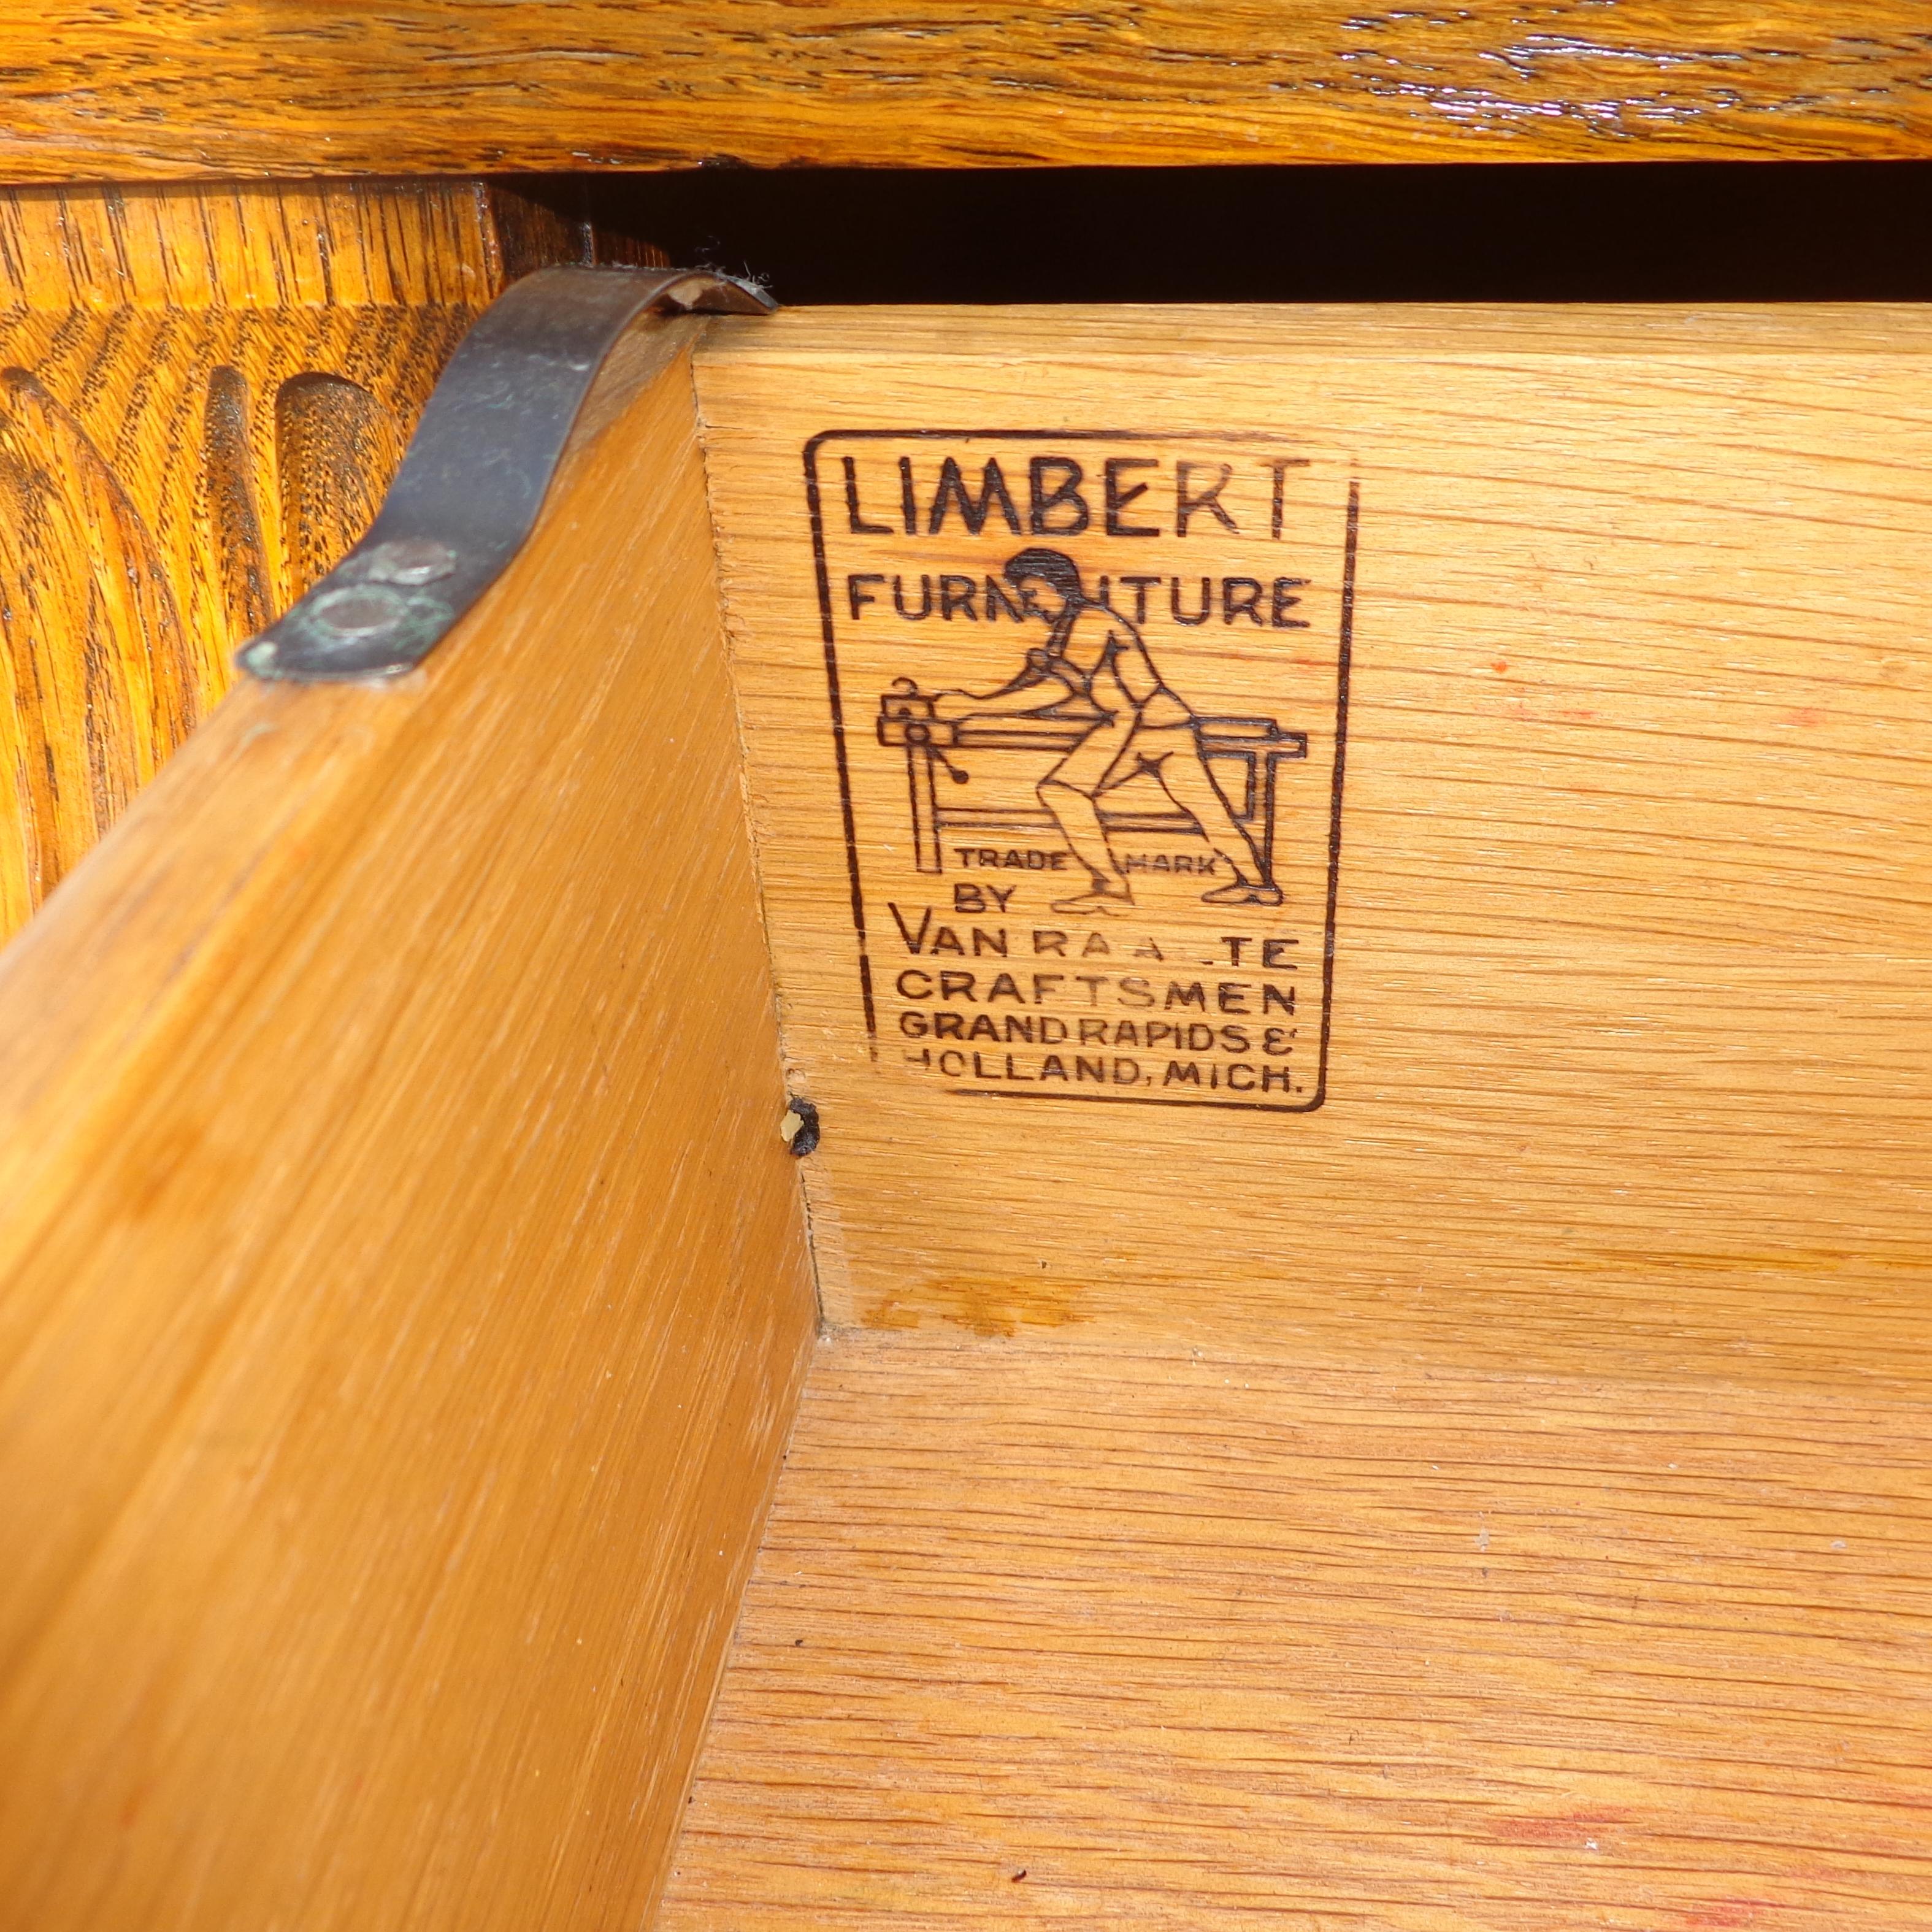 limbert furniture value